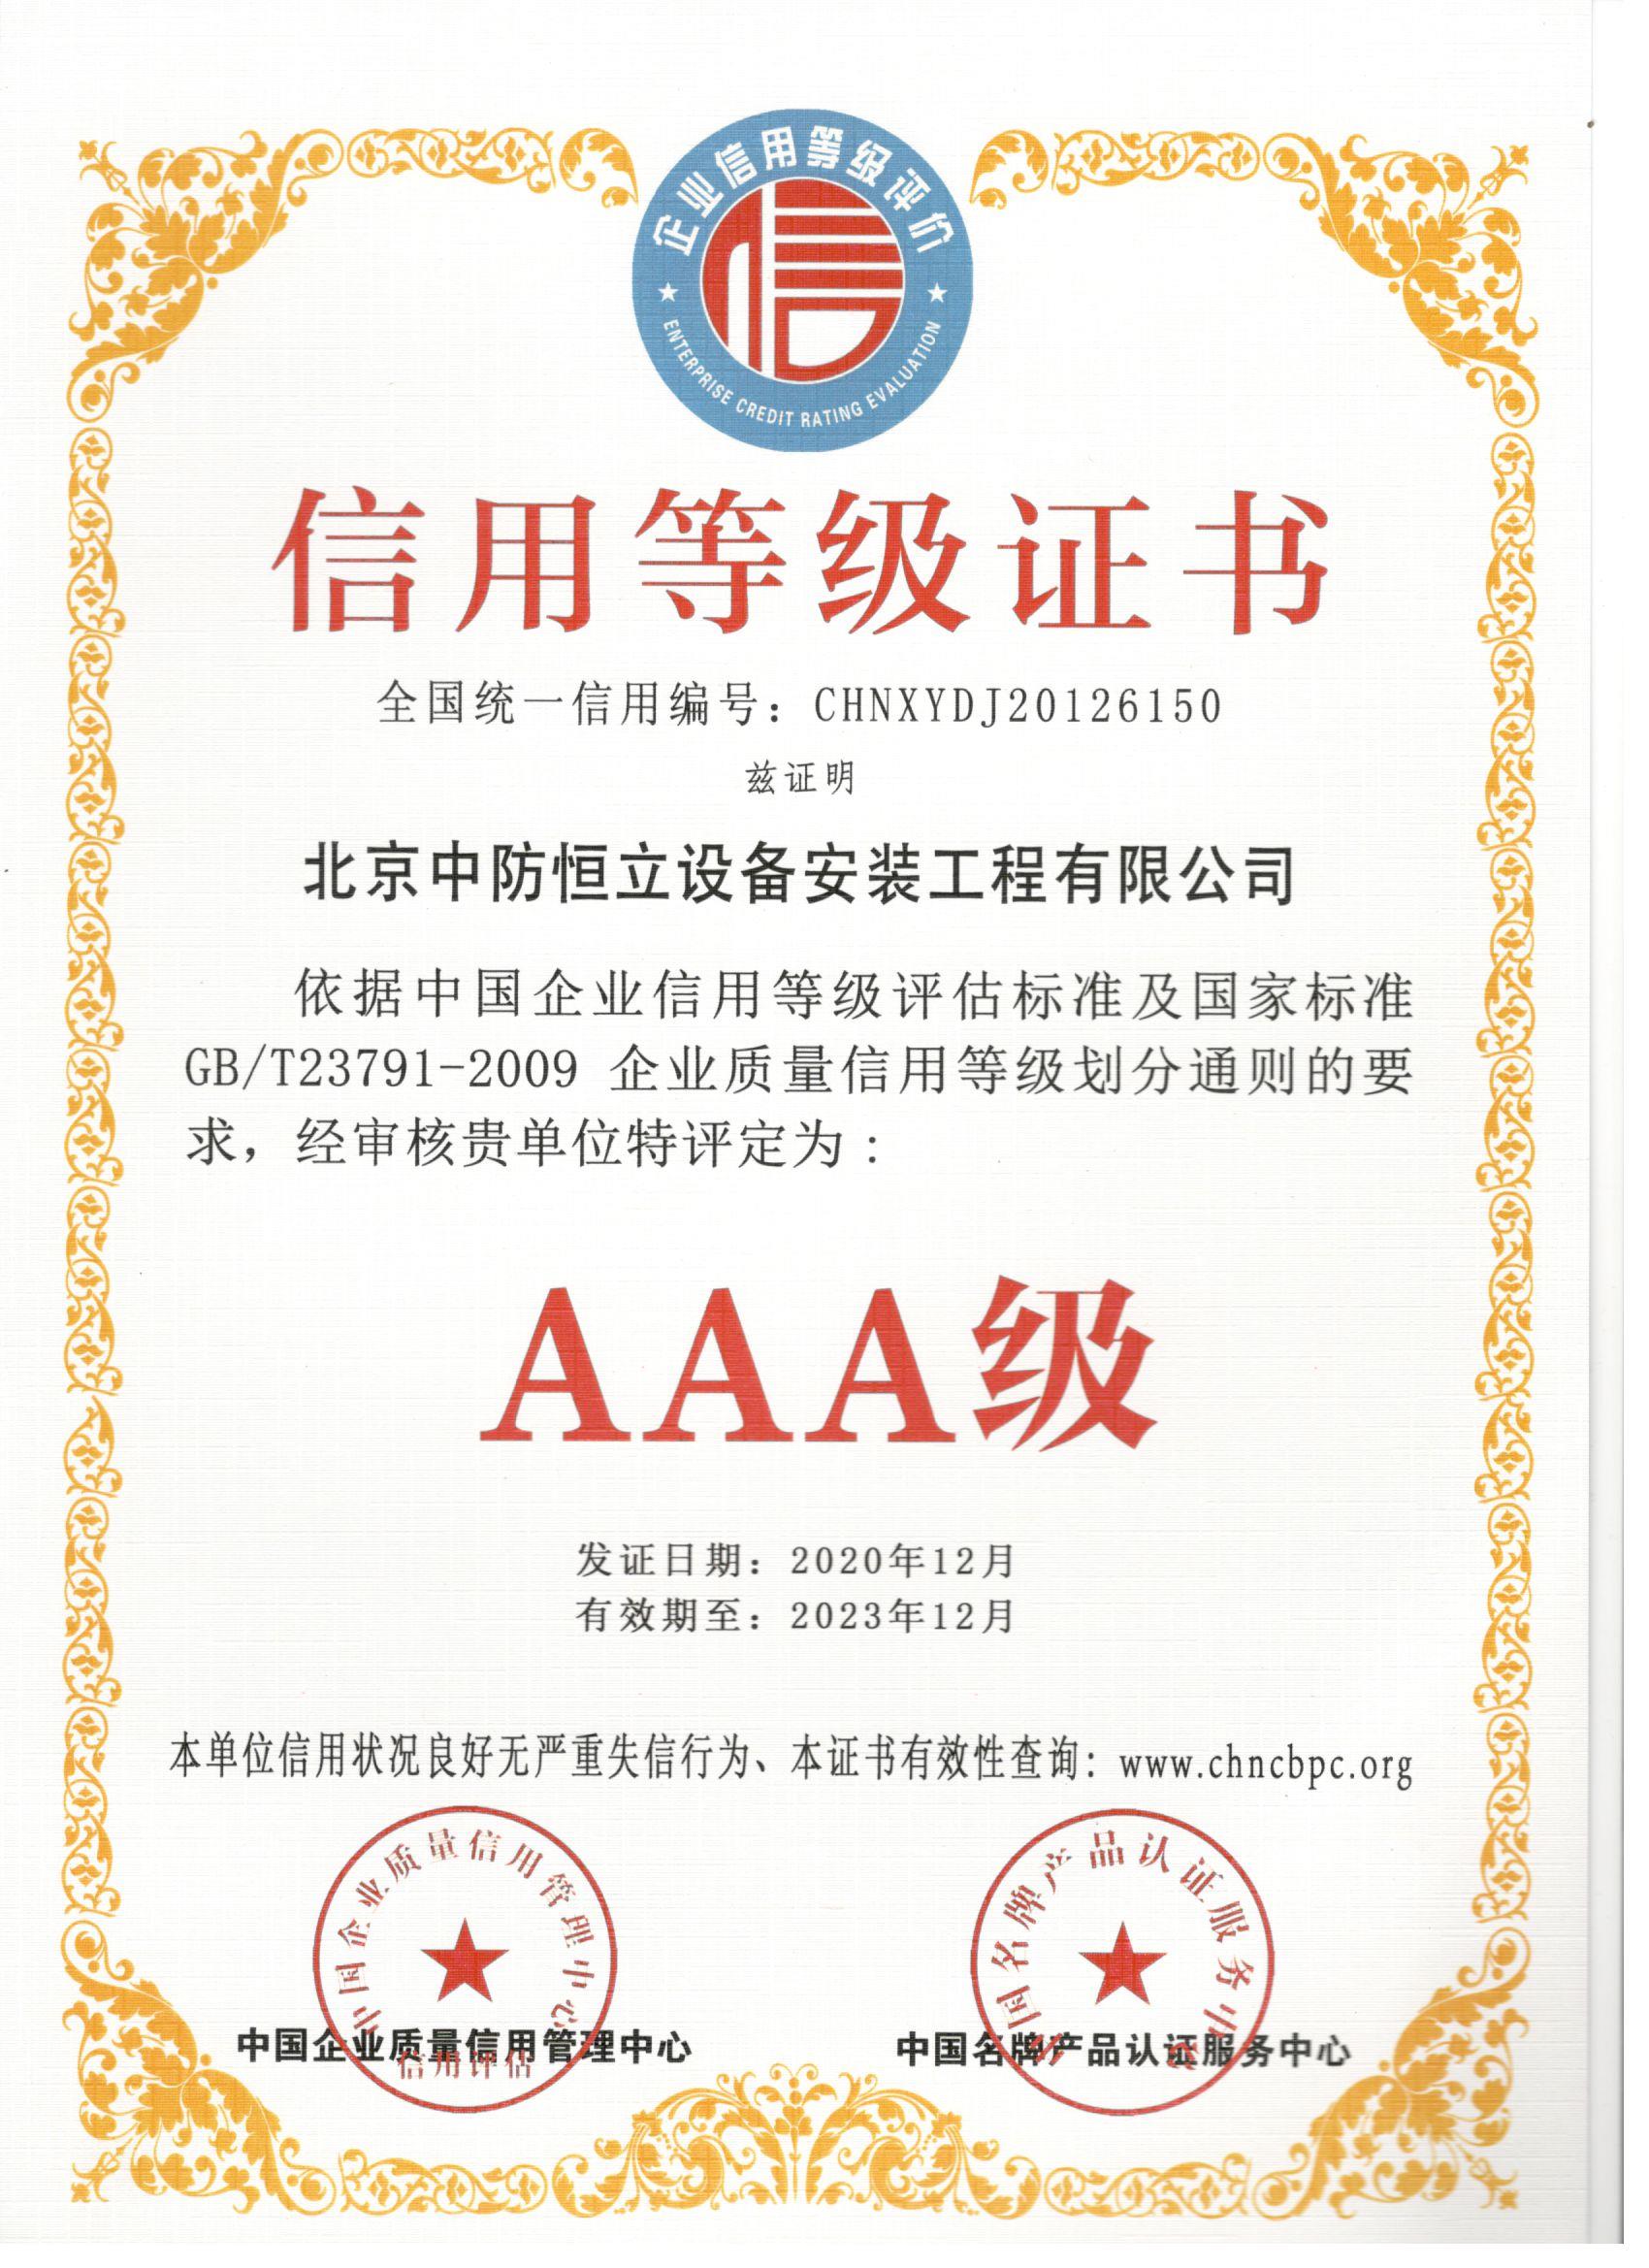 安裝公司AAA級信用等級證書中文